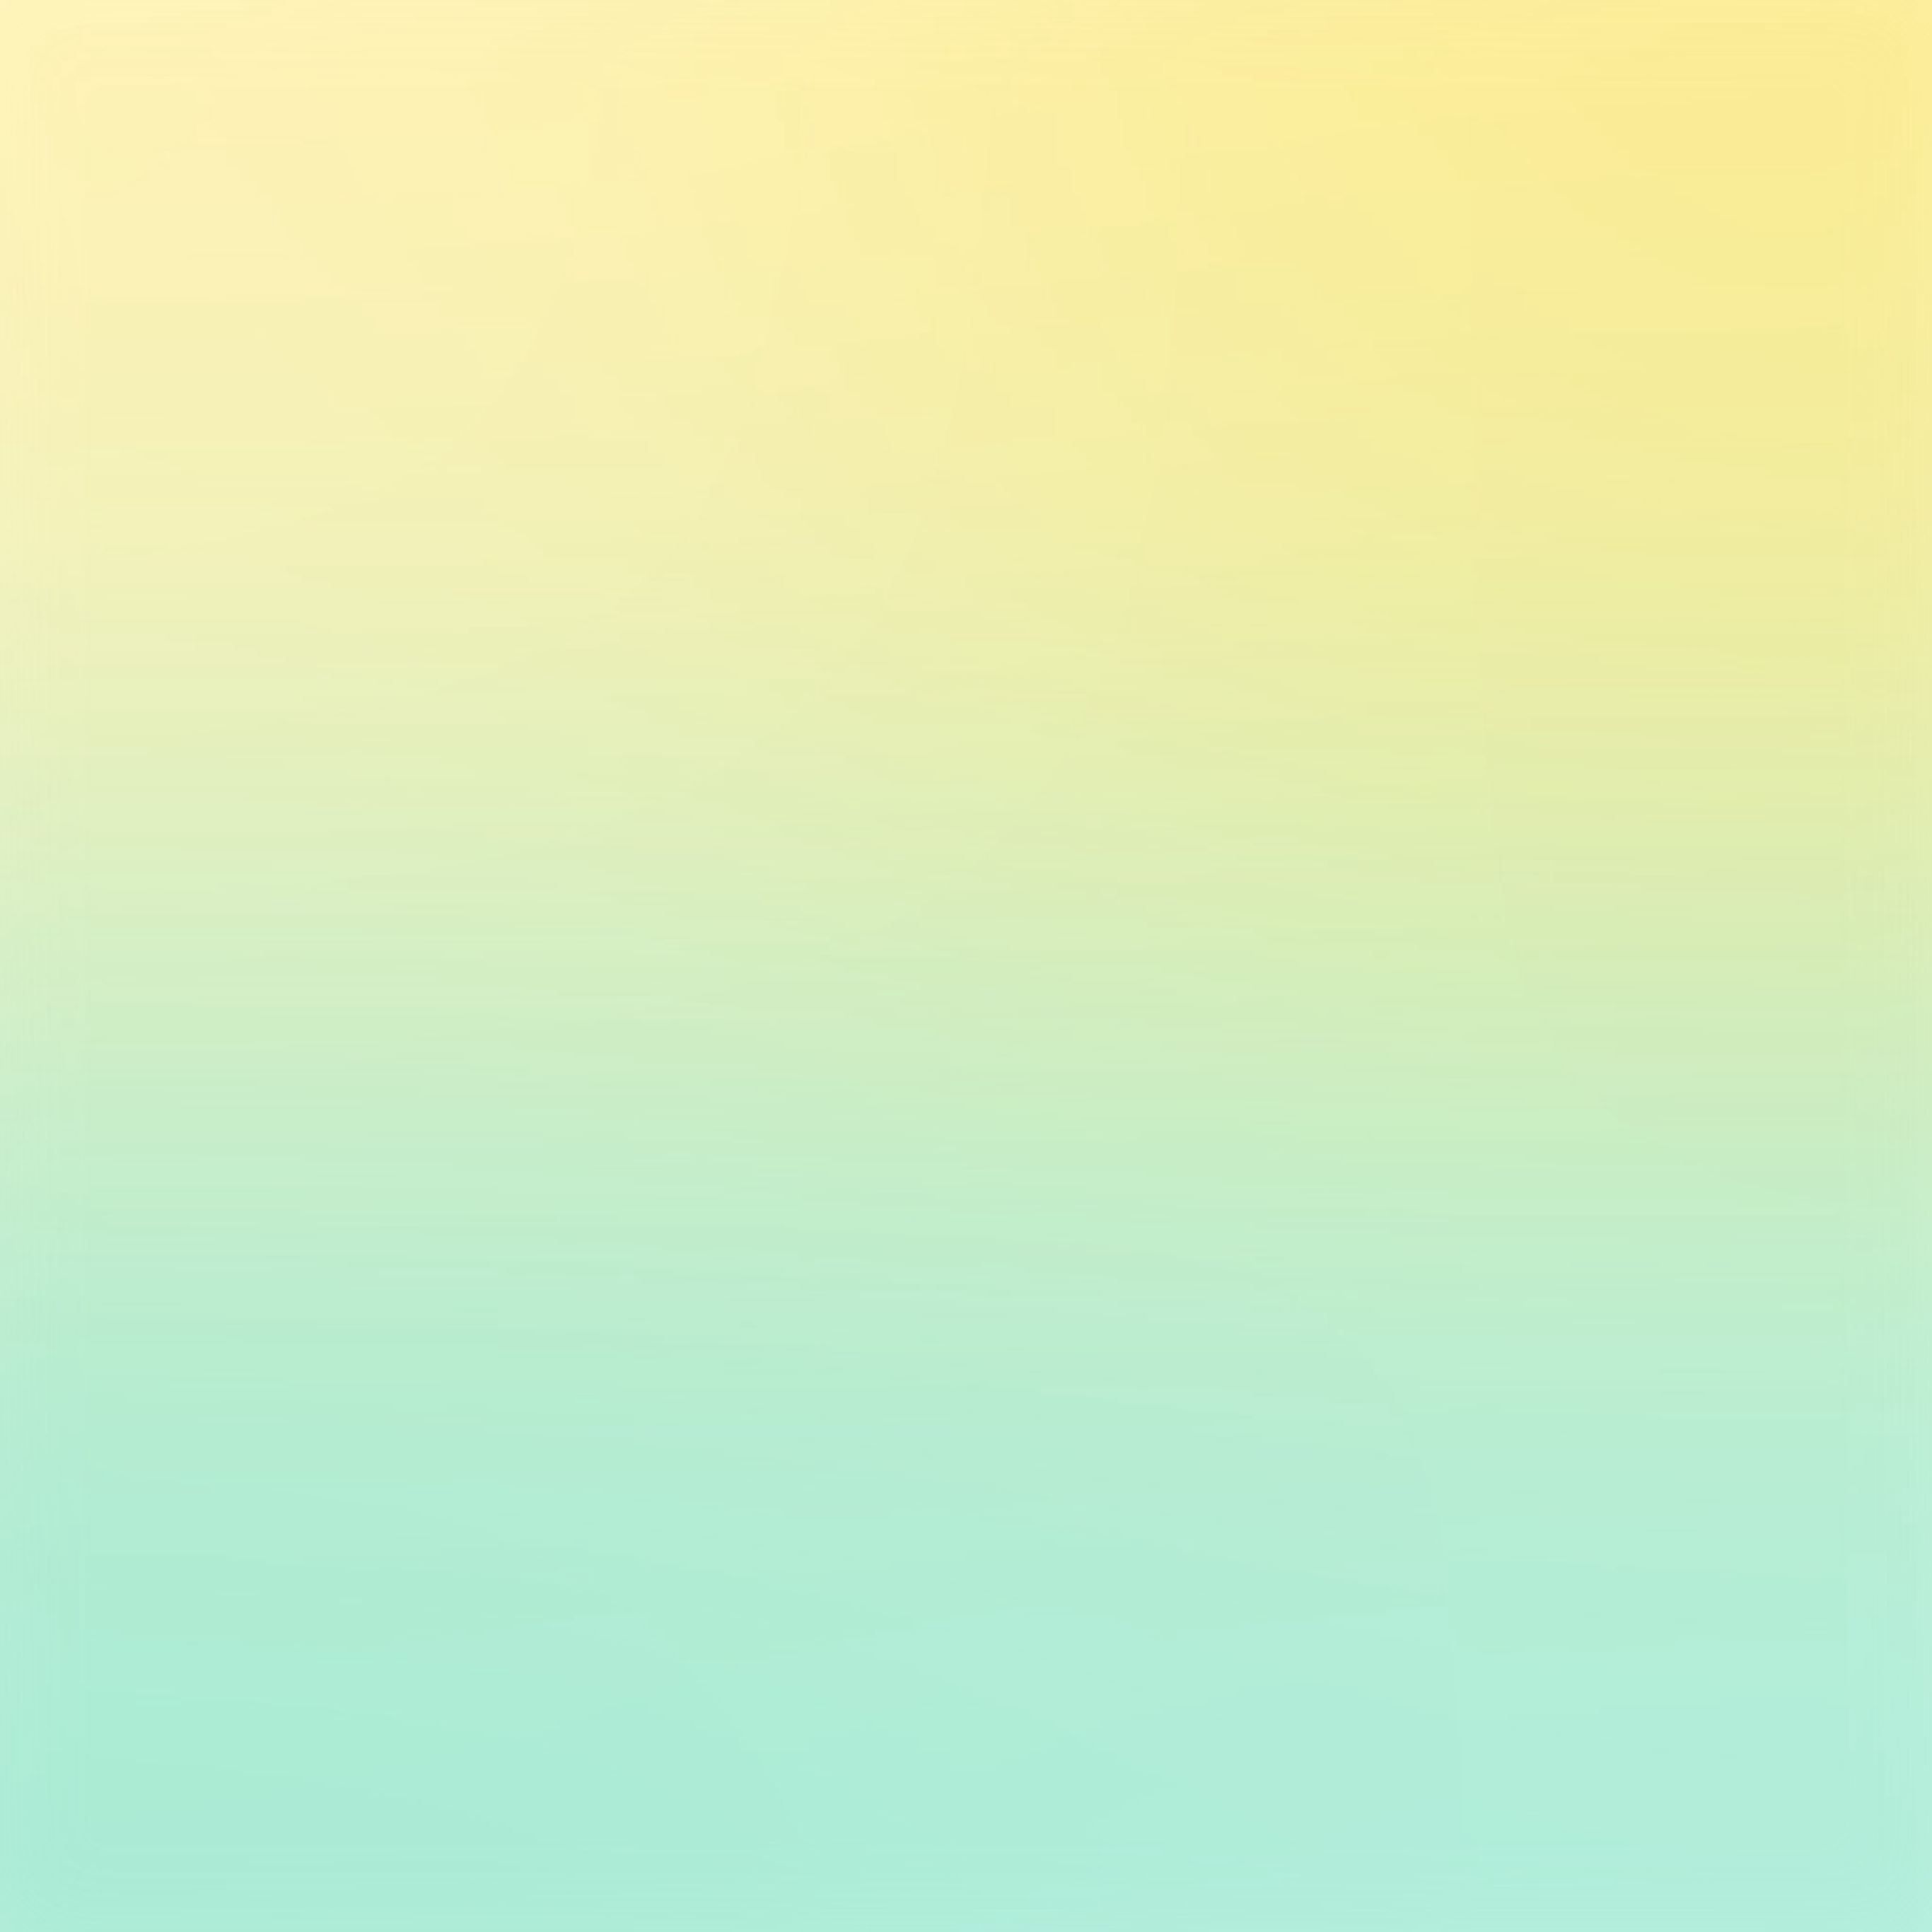 IPad Pro Hintergrundbild 2732x2732. Yellow Green Pastel Blur Gradation iPad Pro Wallpaper Free Download